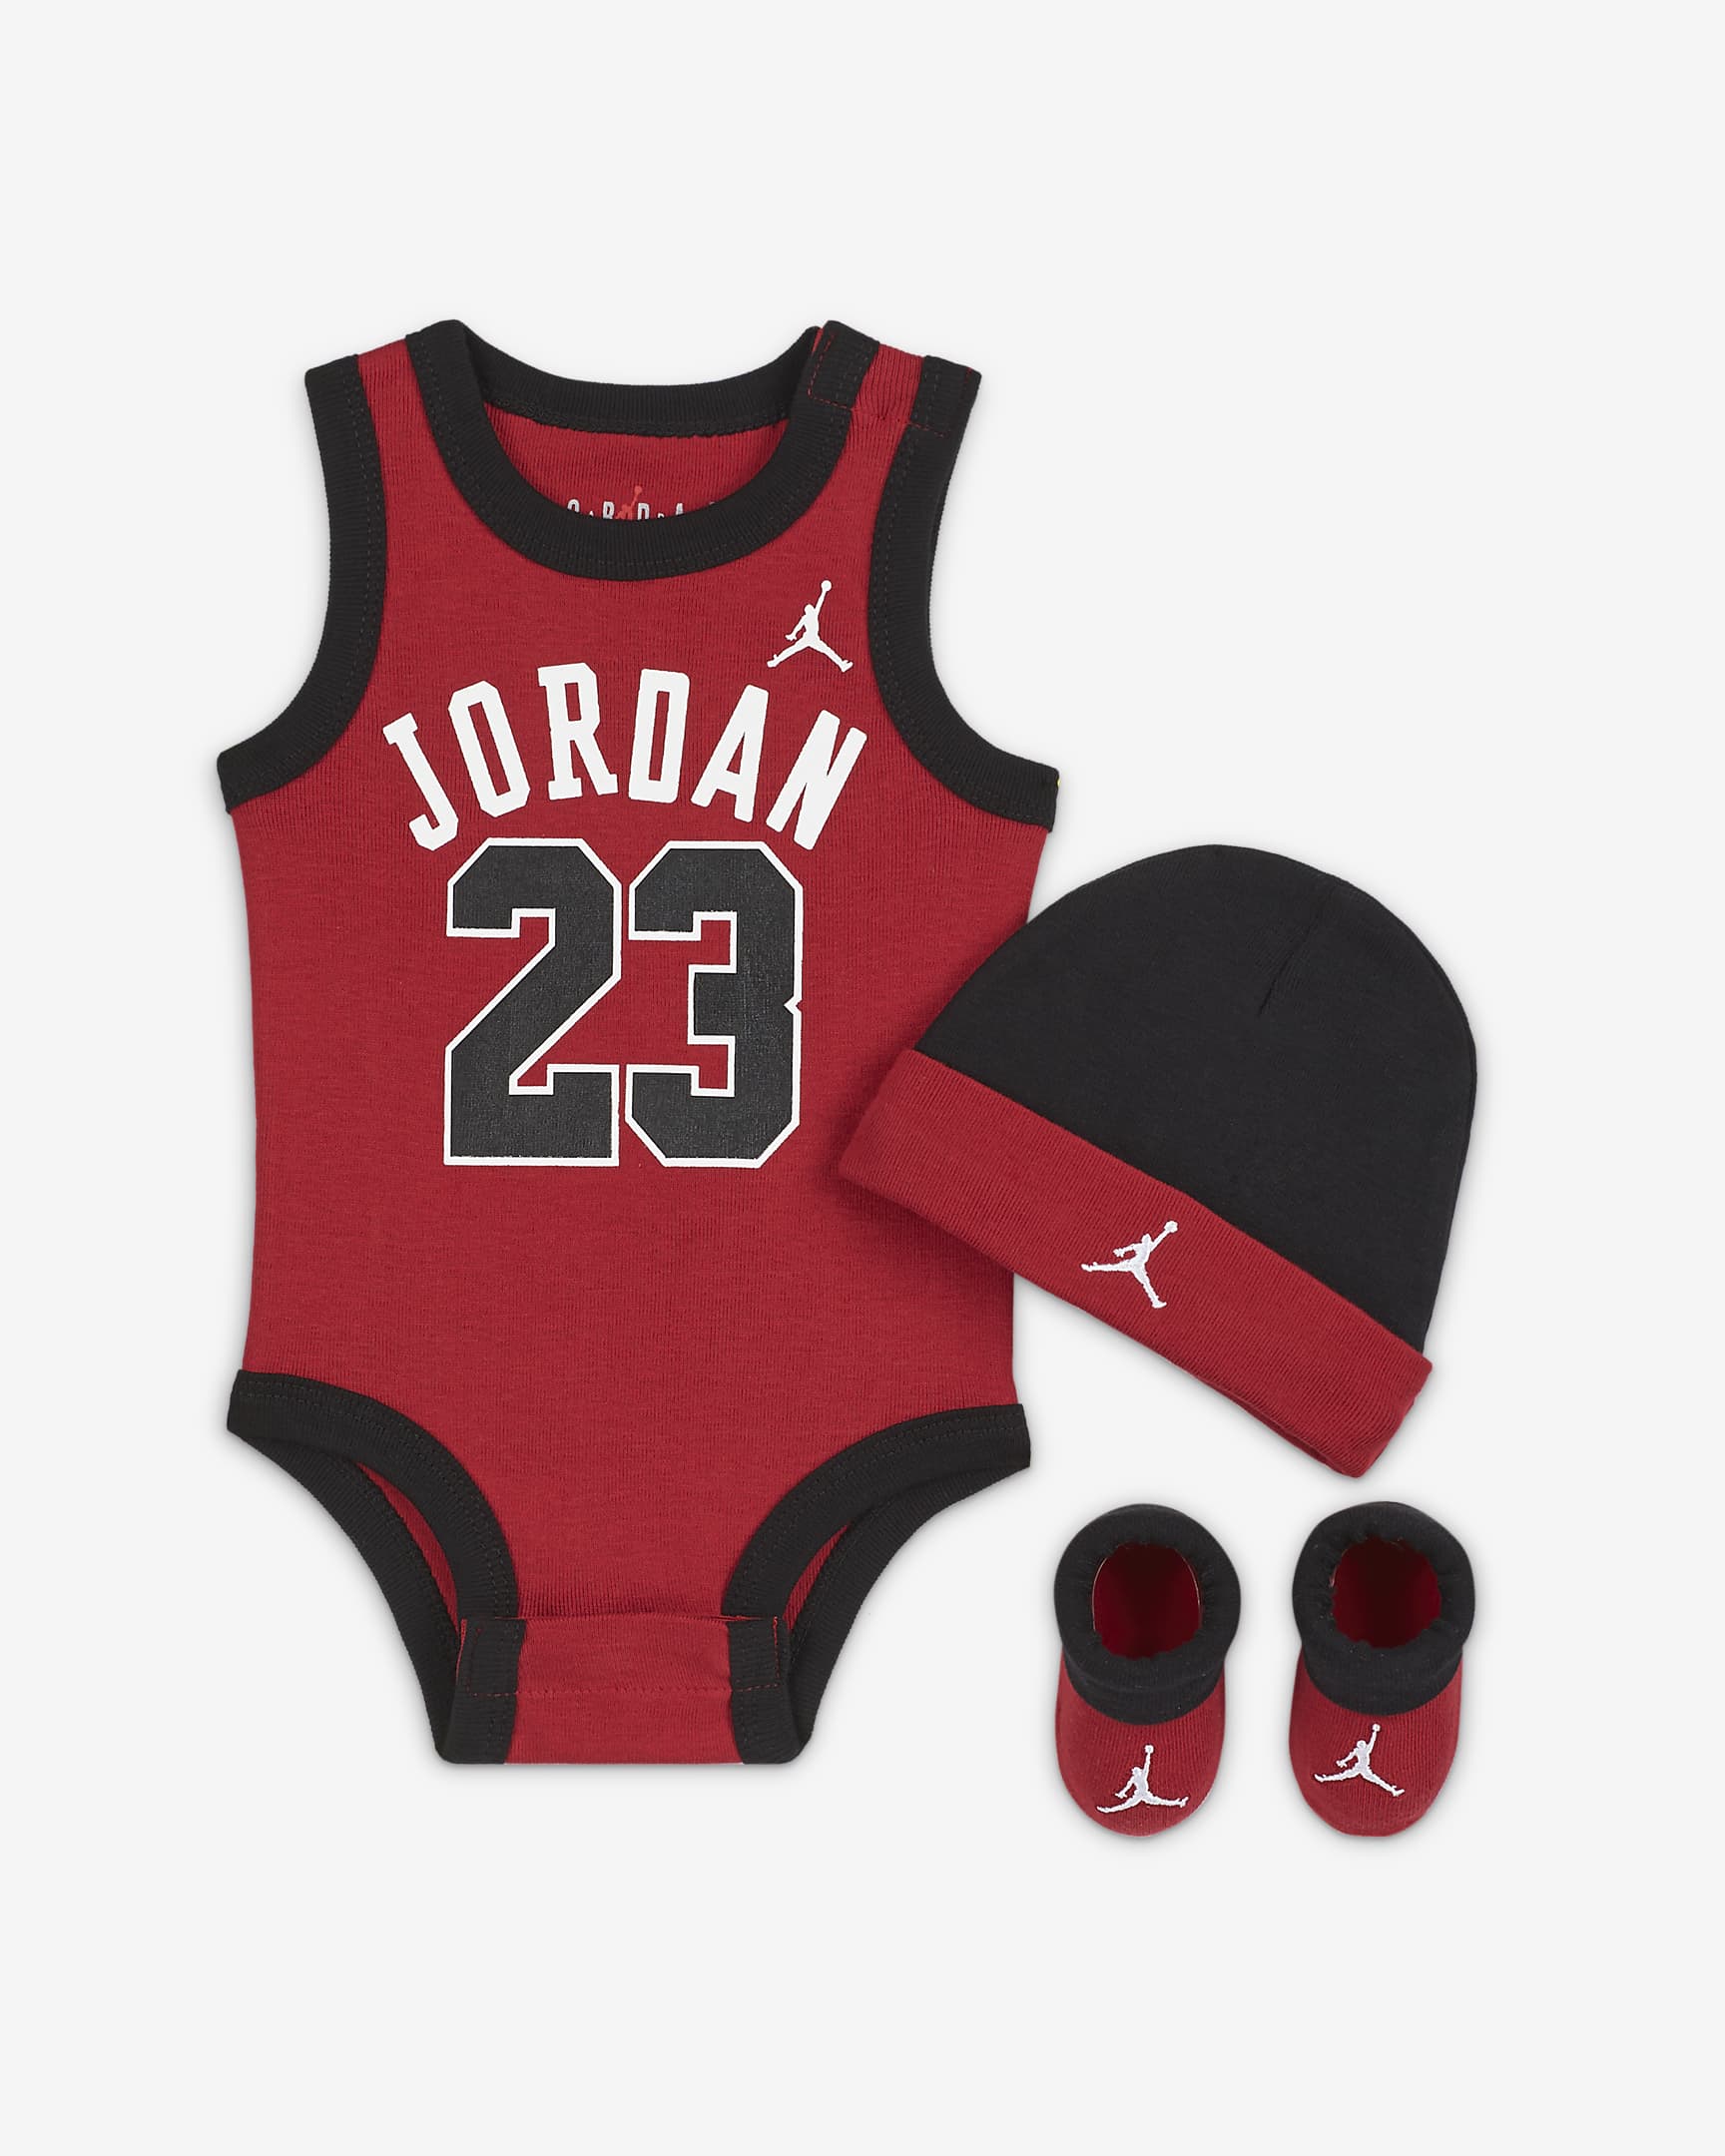 Jordan coffret baby 